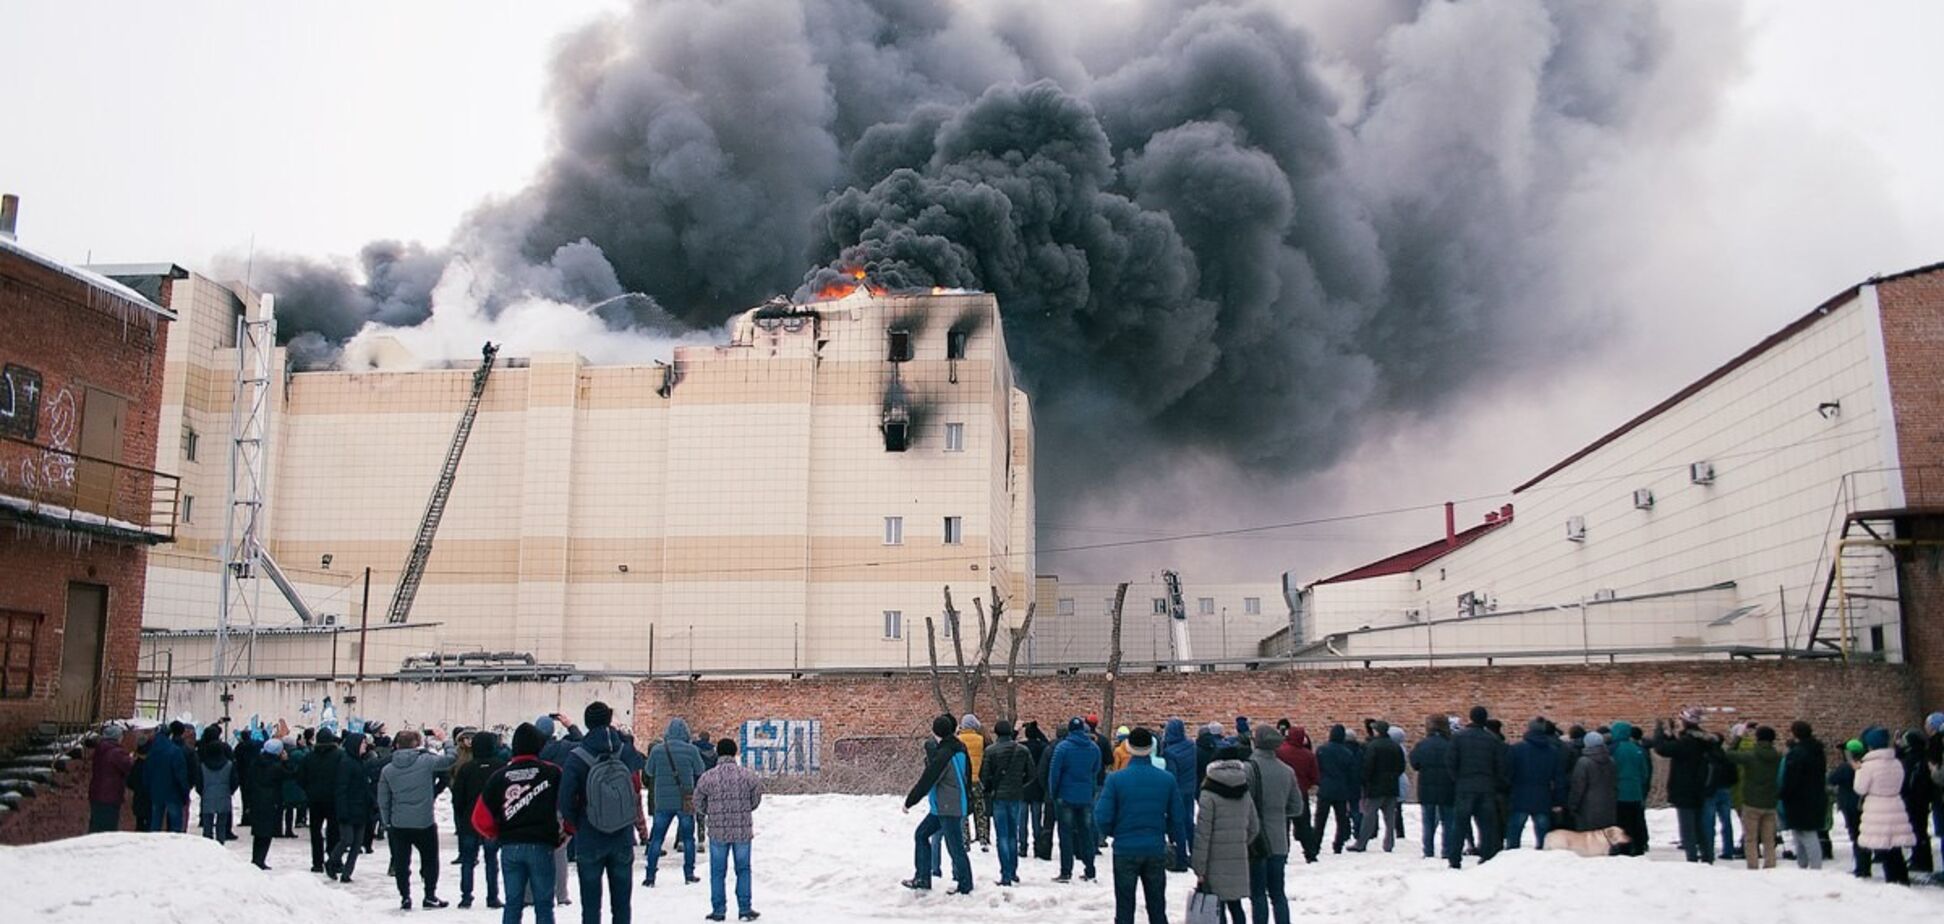 Не тушили целый час! Восстановлена хронология пожара в ТЦ Кемерово 